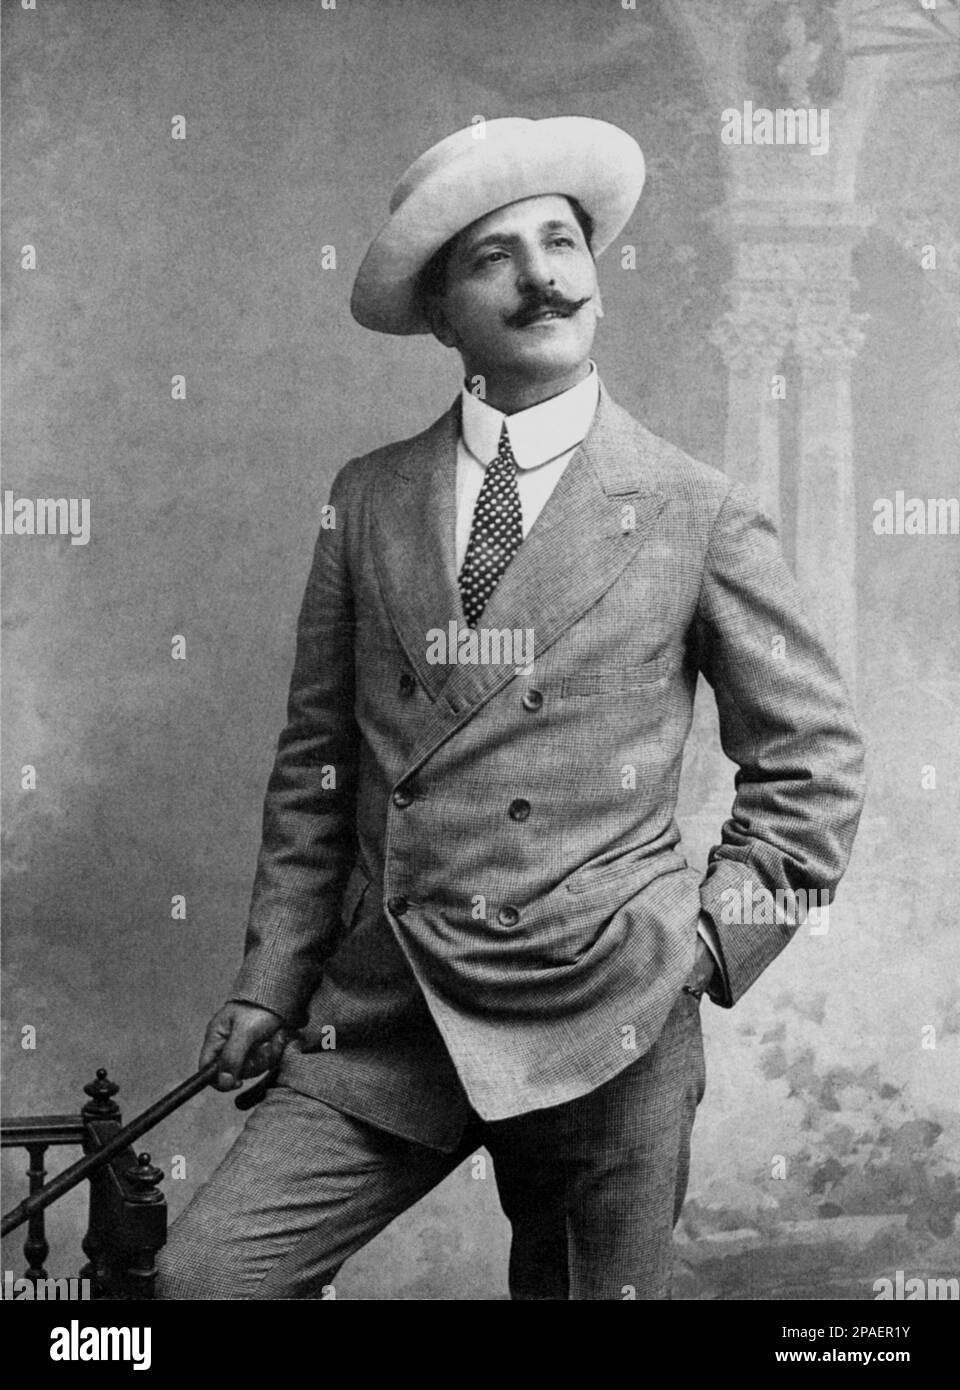 1907 Ca : der italienische Theaterautor und Dramatiker ROBERTO BRACCO ( Neapel 1861 - Sorrento 1943 ) , Autor des Stücks SPERDUTI NEL BUIO ( 1901 ) - LETTERATO - SCRITTORE - LETTERATURA - Literatur - Drammaturgo - TEATRO - Theater - commediografo - Baffi - Schnurrbart - VERISTA - VERISMO - ritratto - Portrait - cappello - Hut - Halsband - colletto - Cravatta a a pois - Polka Dots - Moustache - Zuckerrohr - Bastone da passeggio --- ARCHIVIO GBB Stockfoto